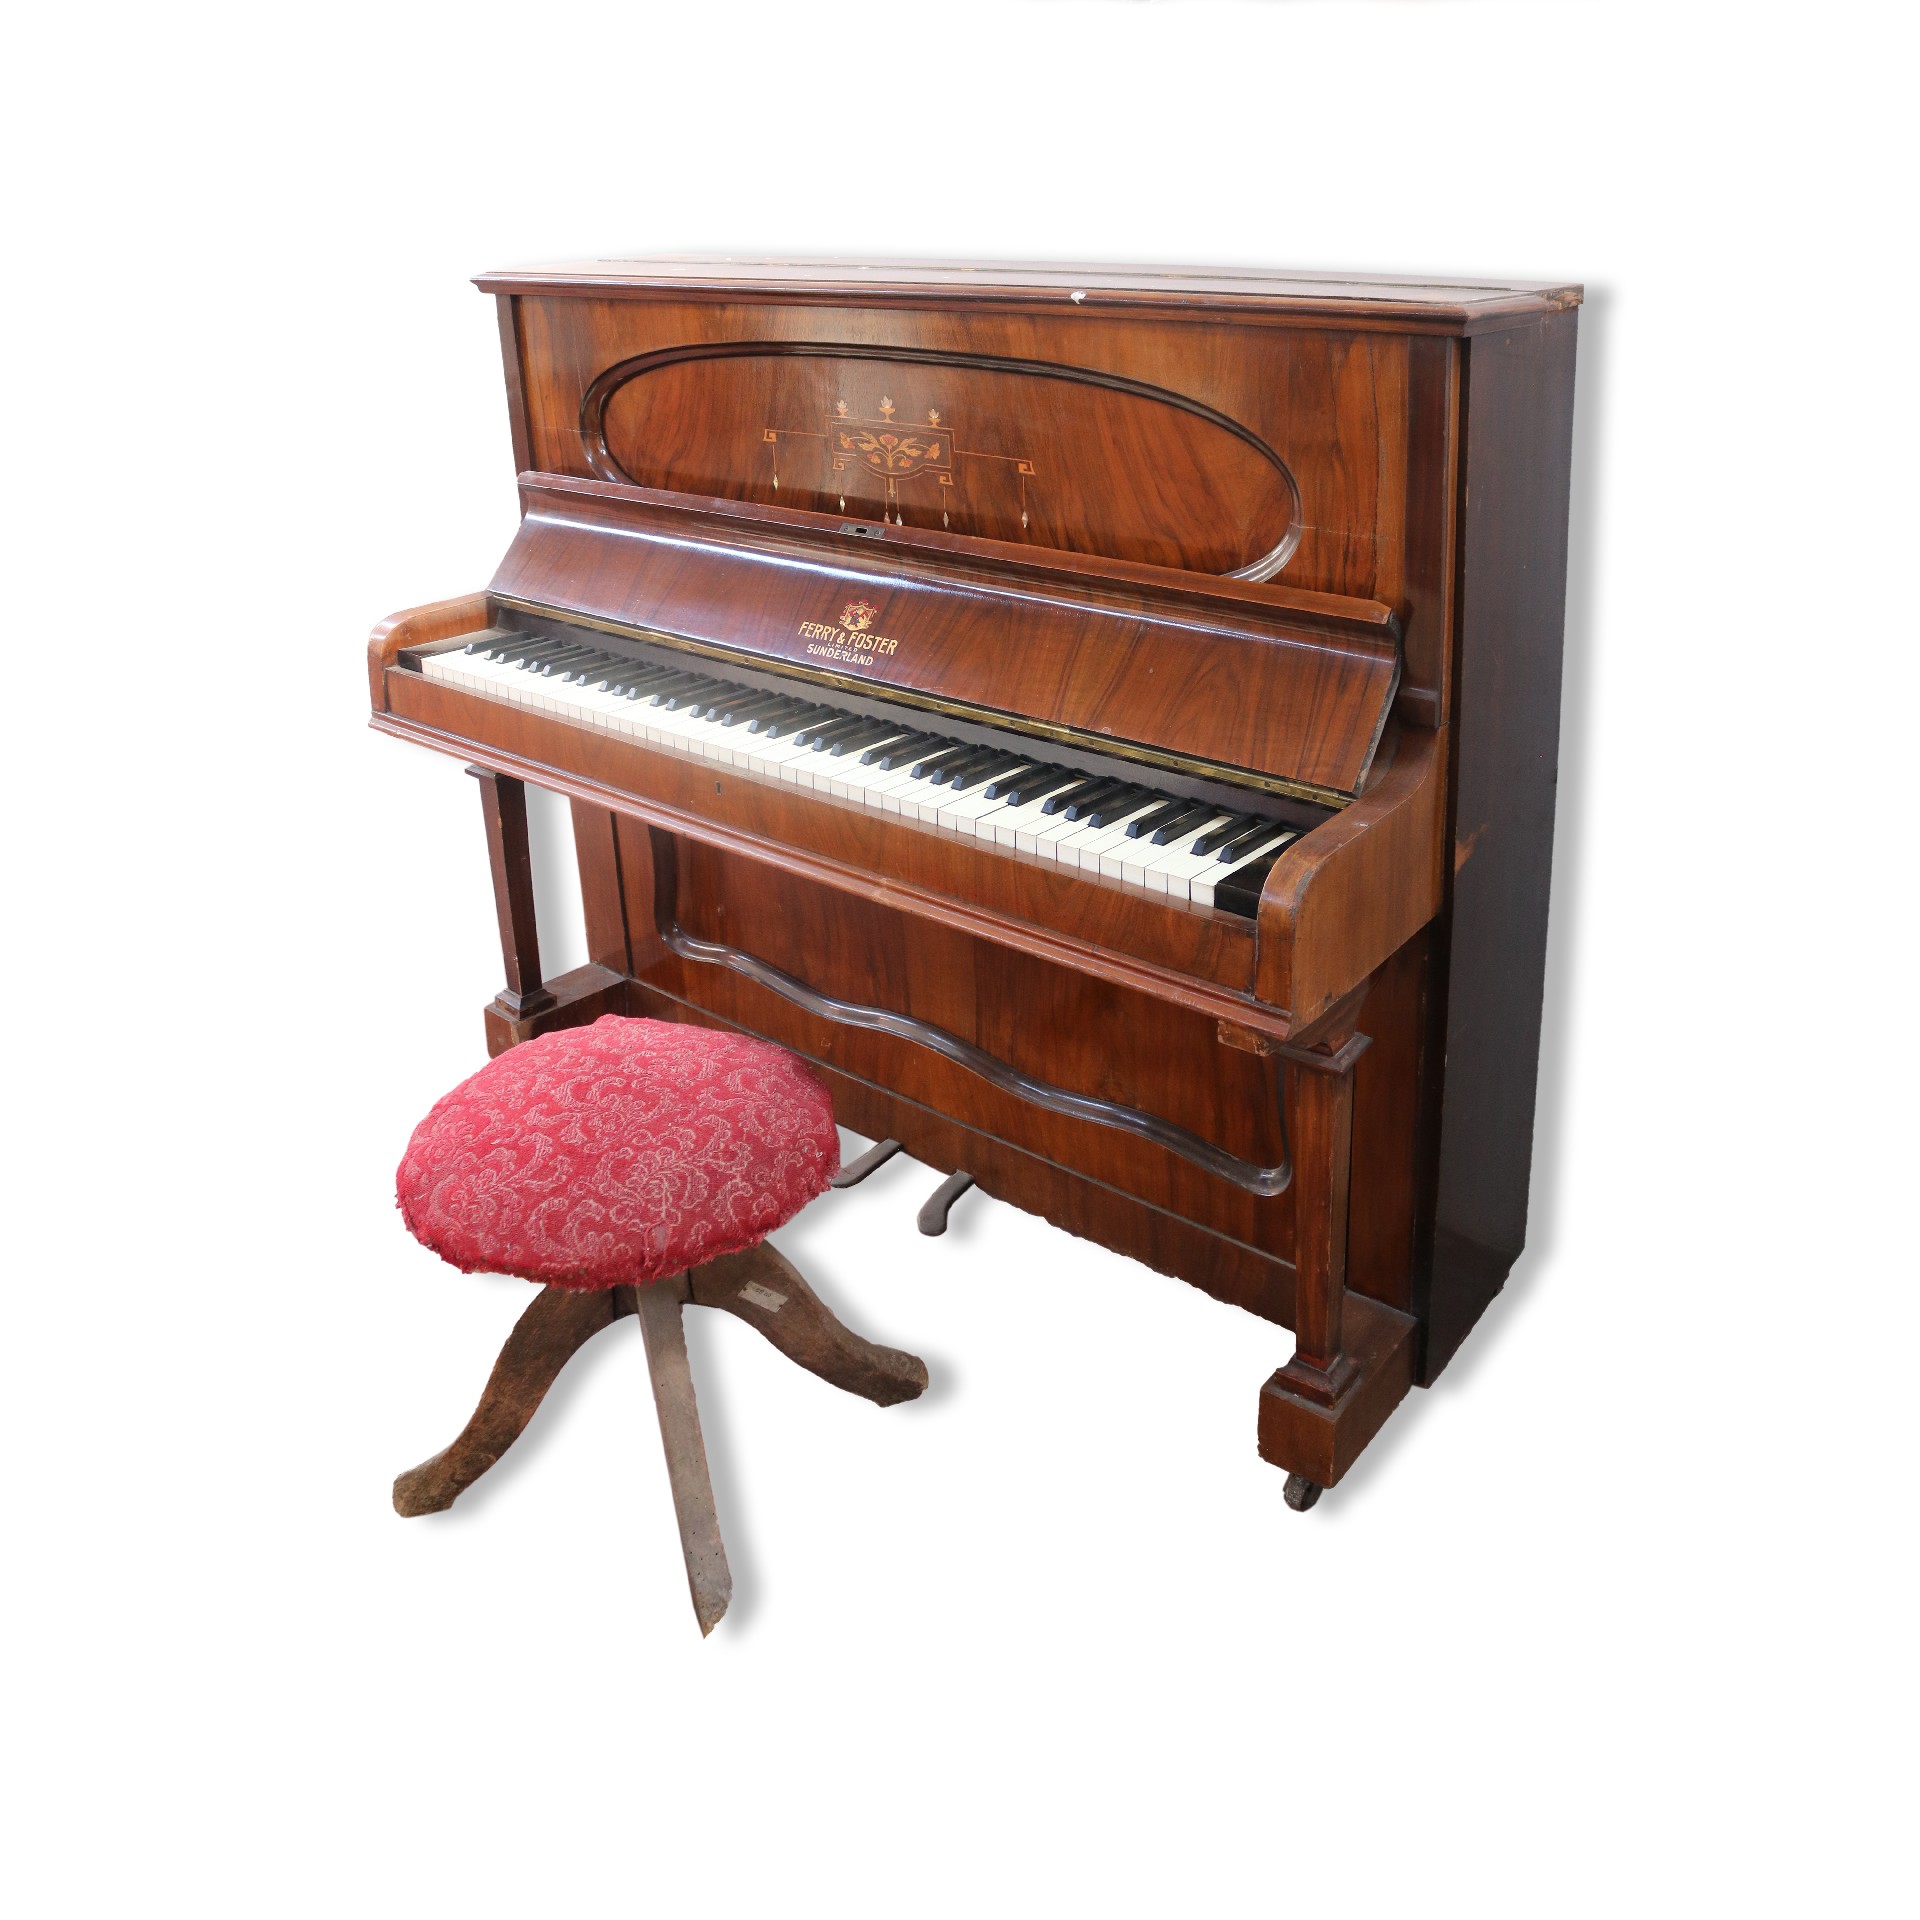 Antico pianoforte in legno - Strumenti musicali - Mobili antichi - Prodotti - Antichità Fiorillo